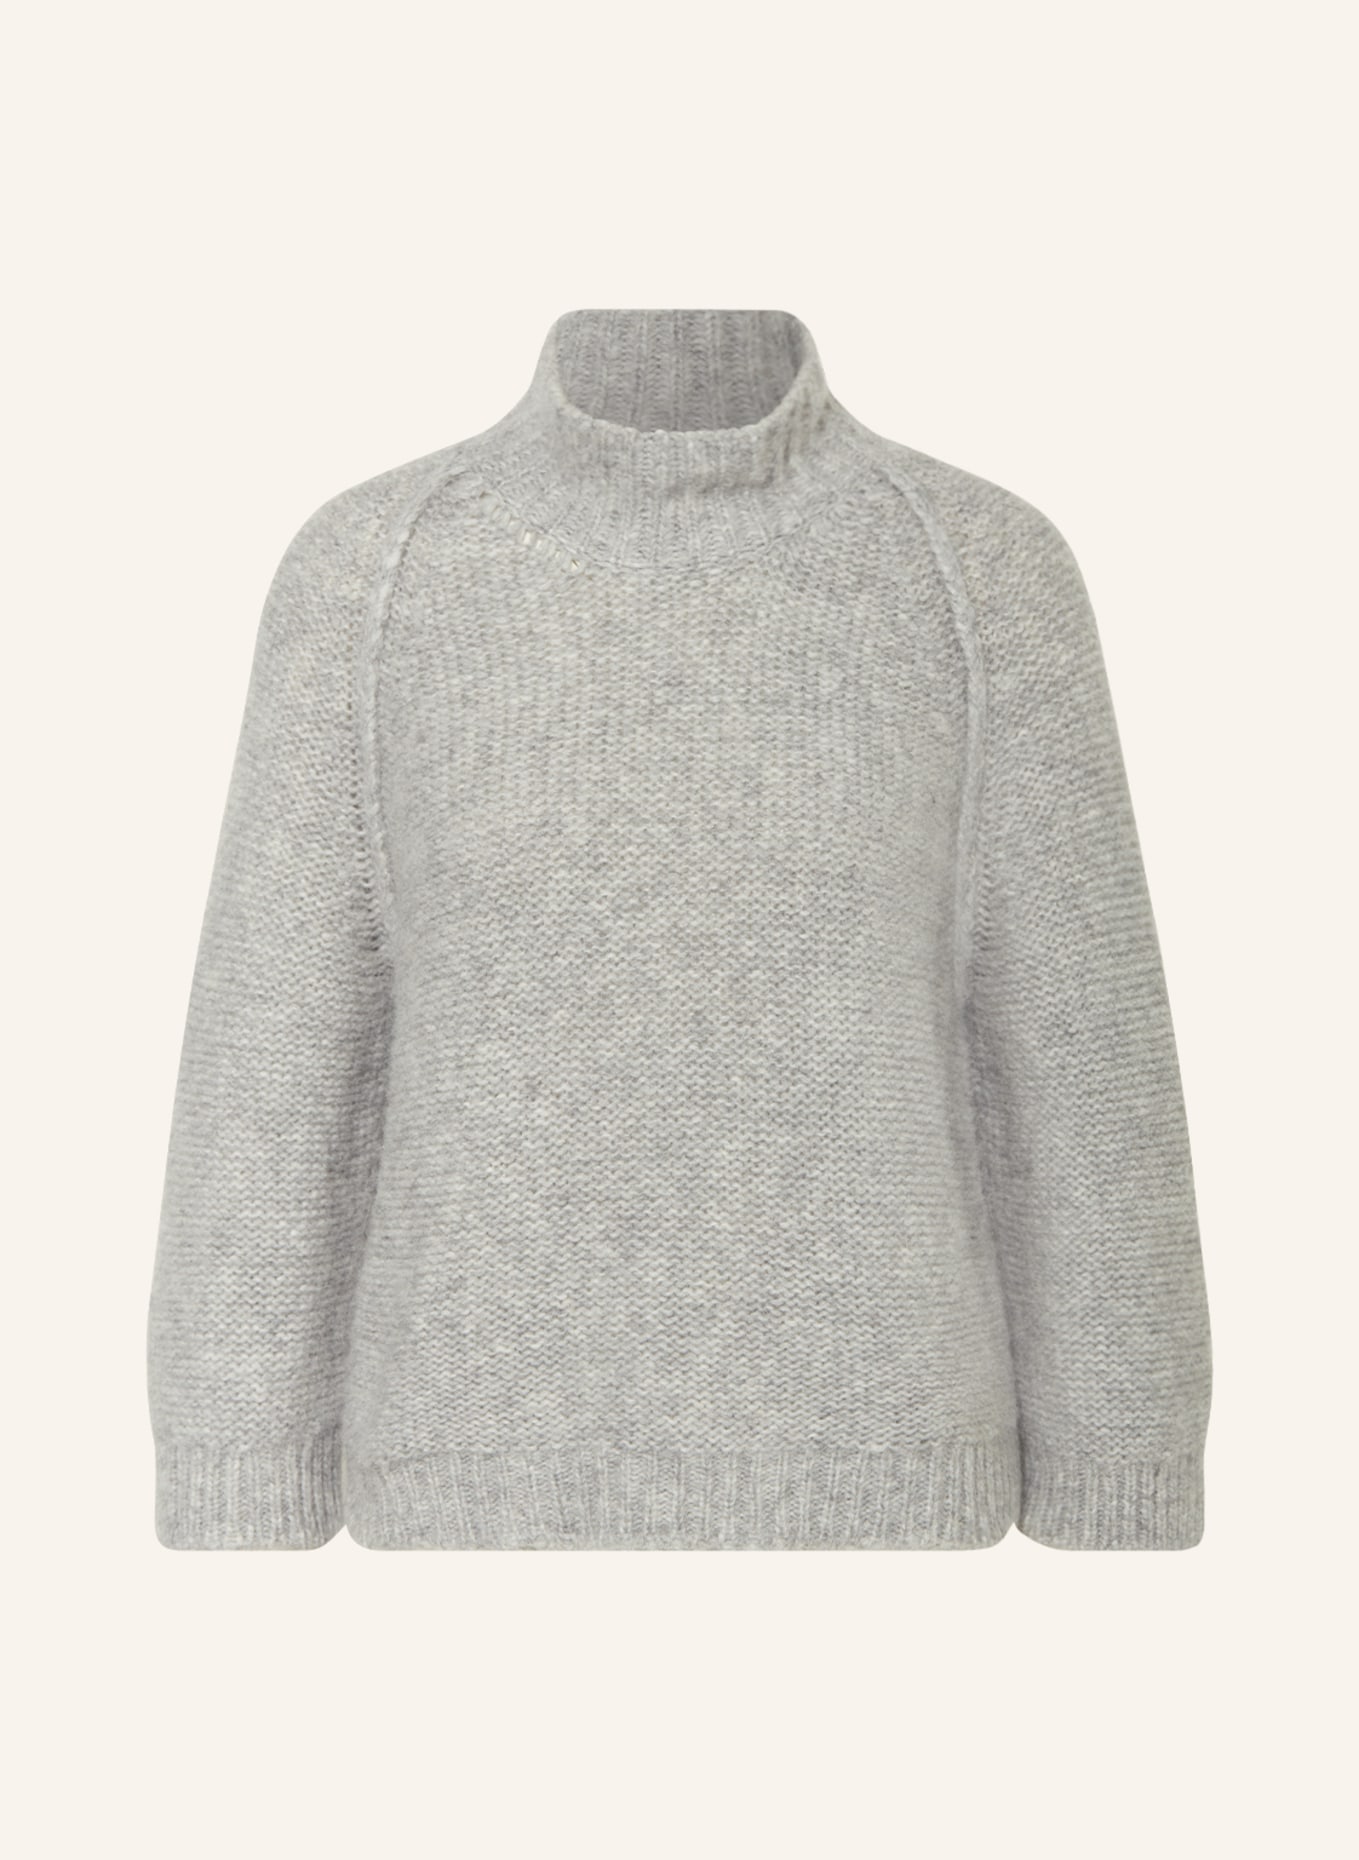 ANTONELLI firenze Alpaca sweater COURMAYEUR, Color: LIGHT GRAY (Image 1)